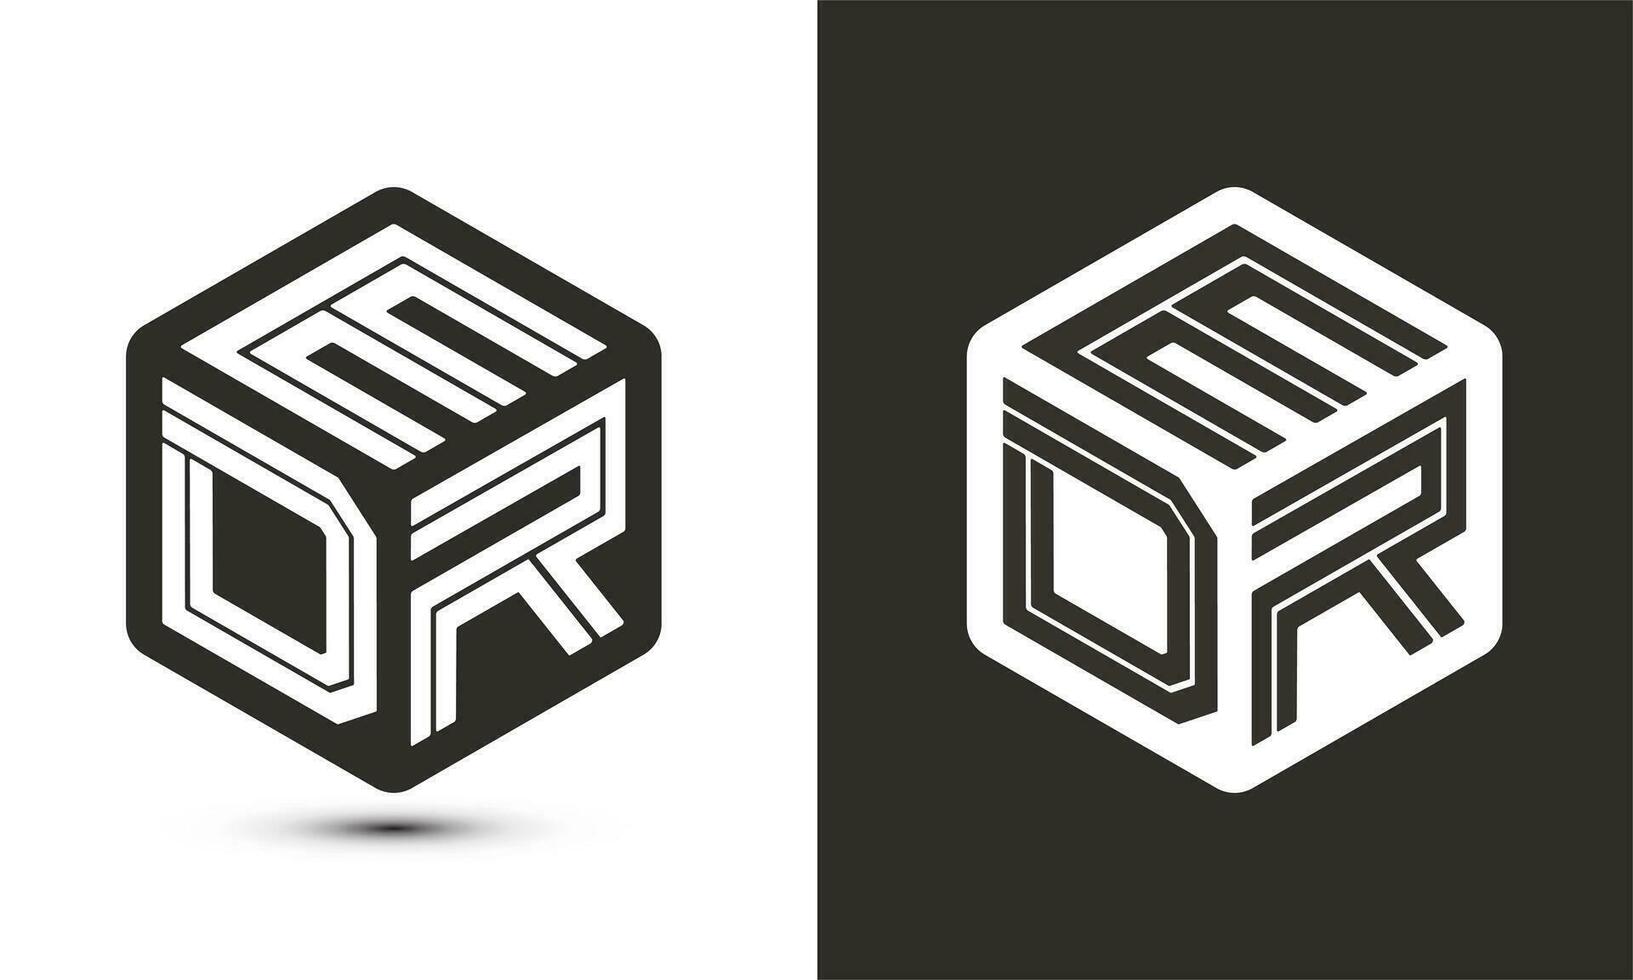 edr brief logo ontwerp met illustrator kubus logo, vector logo modern alfabet doopvont overlappen stijl.